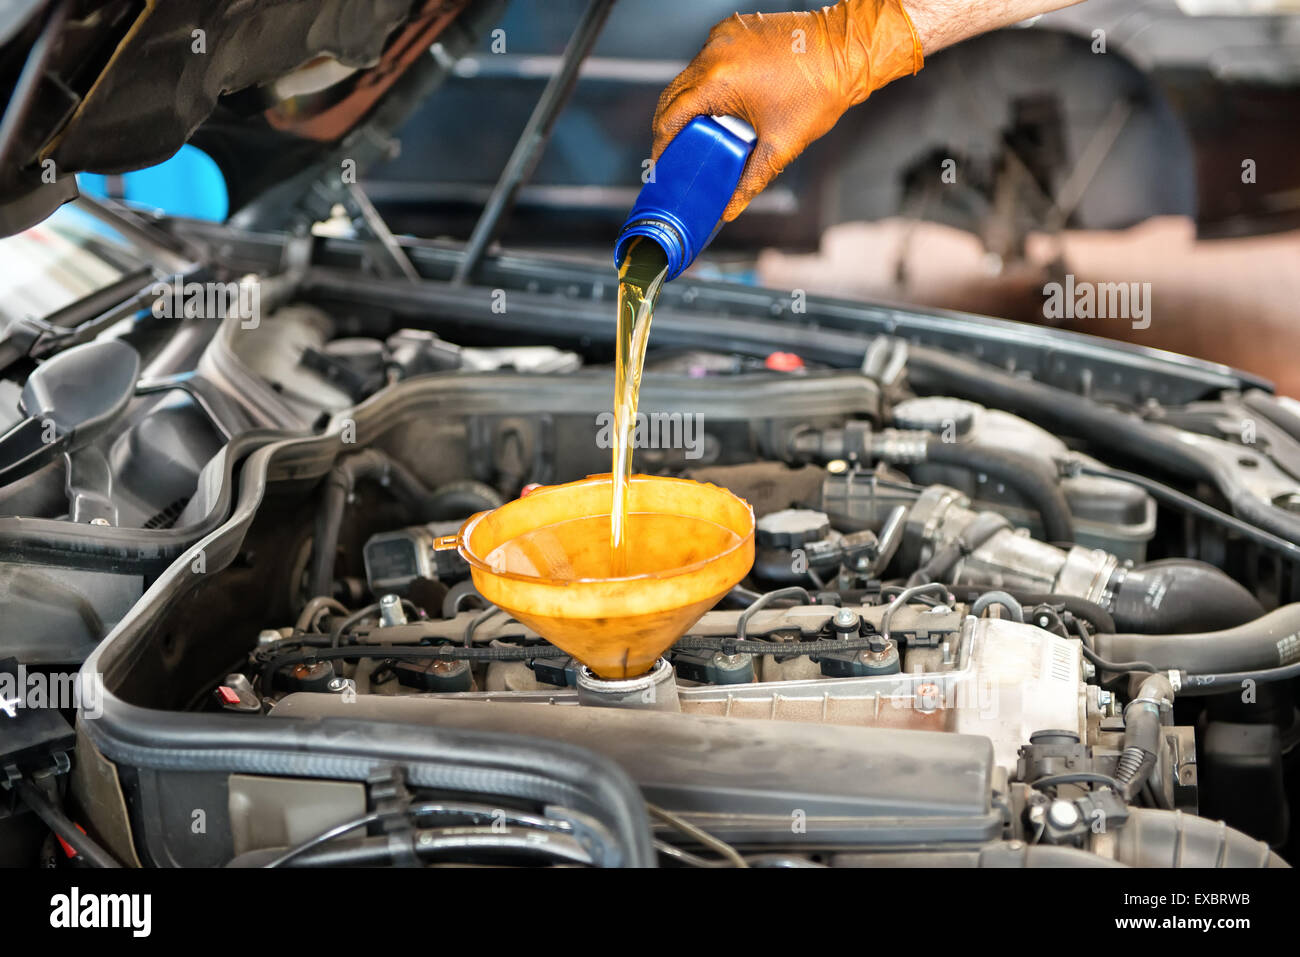 Mechaniker Nachfüllen des Öls in einem Auto Gießen einen Pint Öl durch einen Trichter in den Motor Nahaufnahme von seiner Hand und das Öl Stockfoto